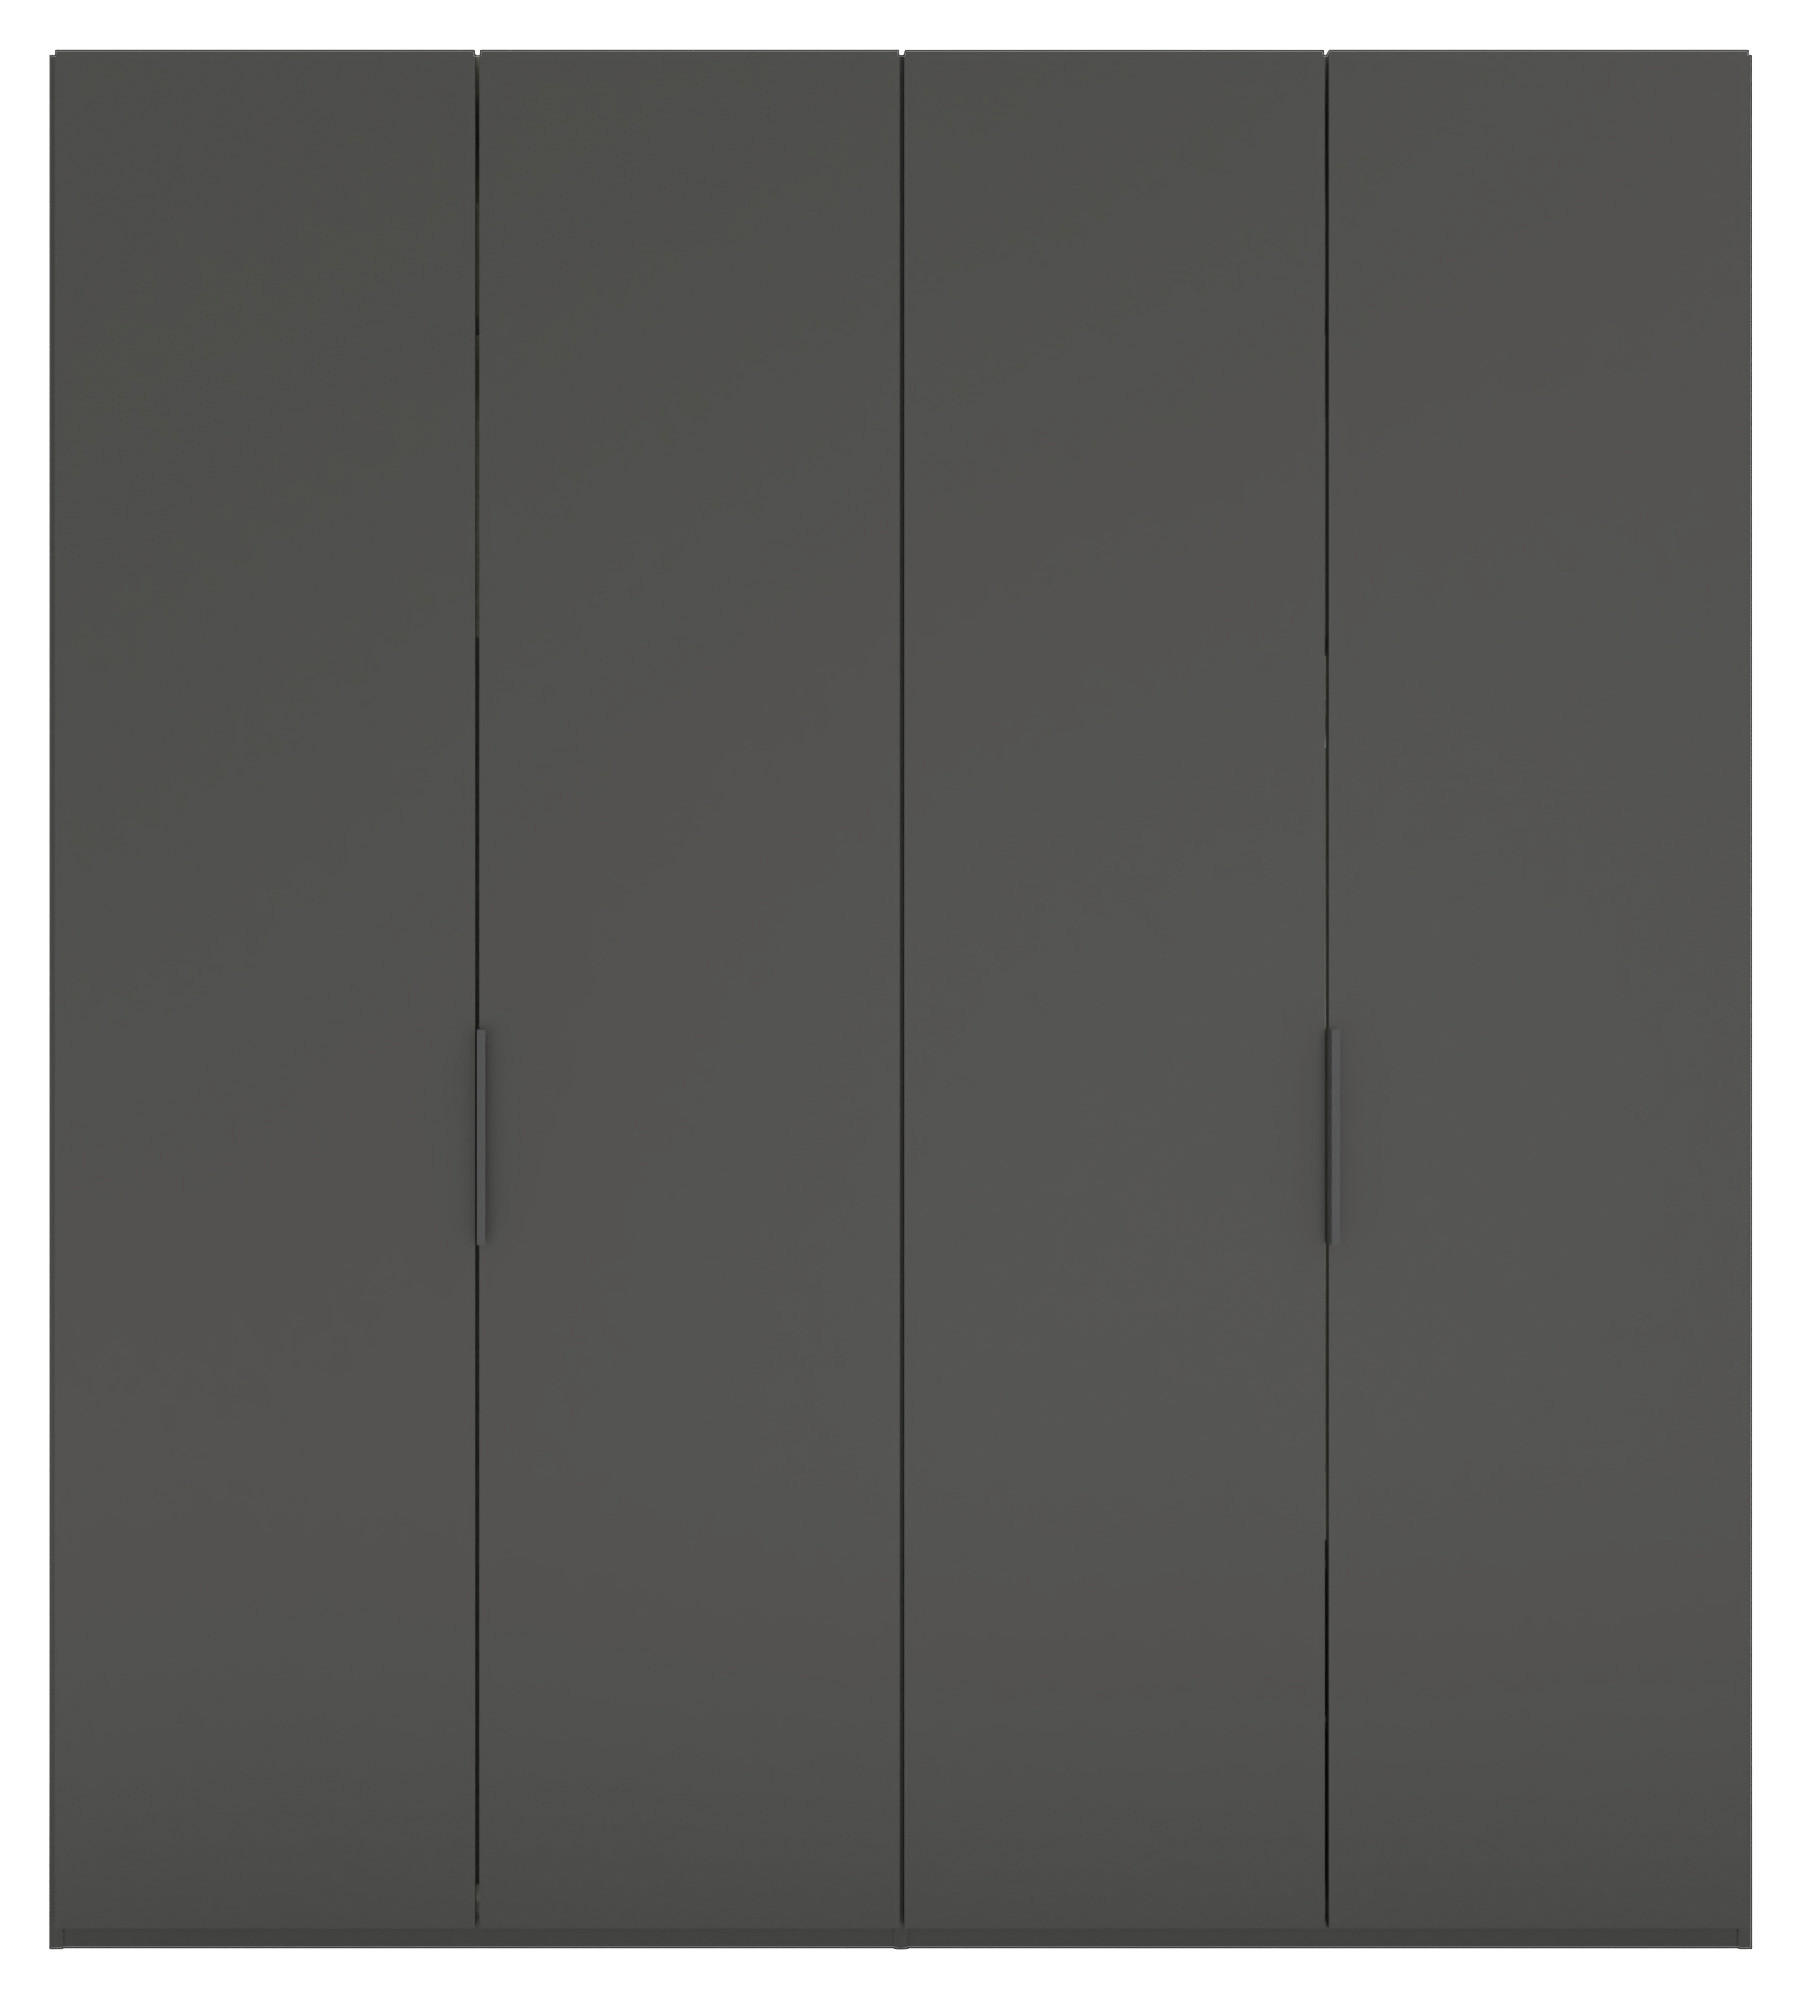 DREHTÜRENSCHRANK 200/223/62 cm 4-türig  - Anthrazit/Schwarz, KONVENTIONELL, Holzwerkstoff/Metall (200/223/62cm) - Visionight